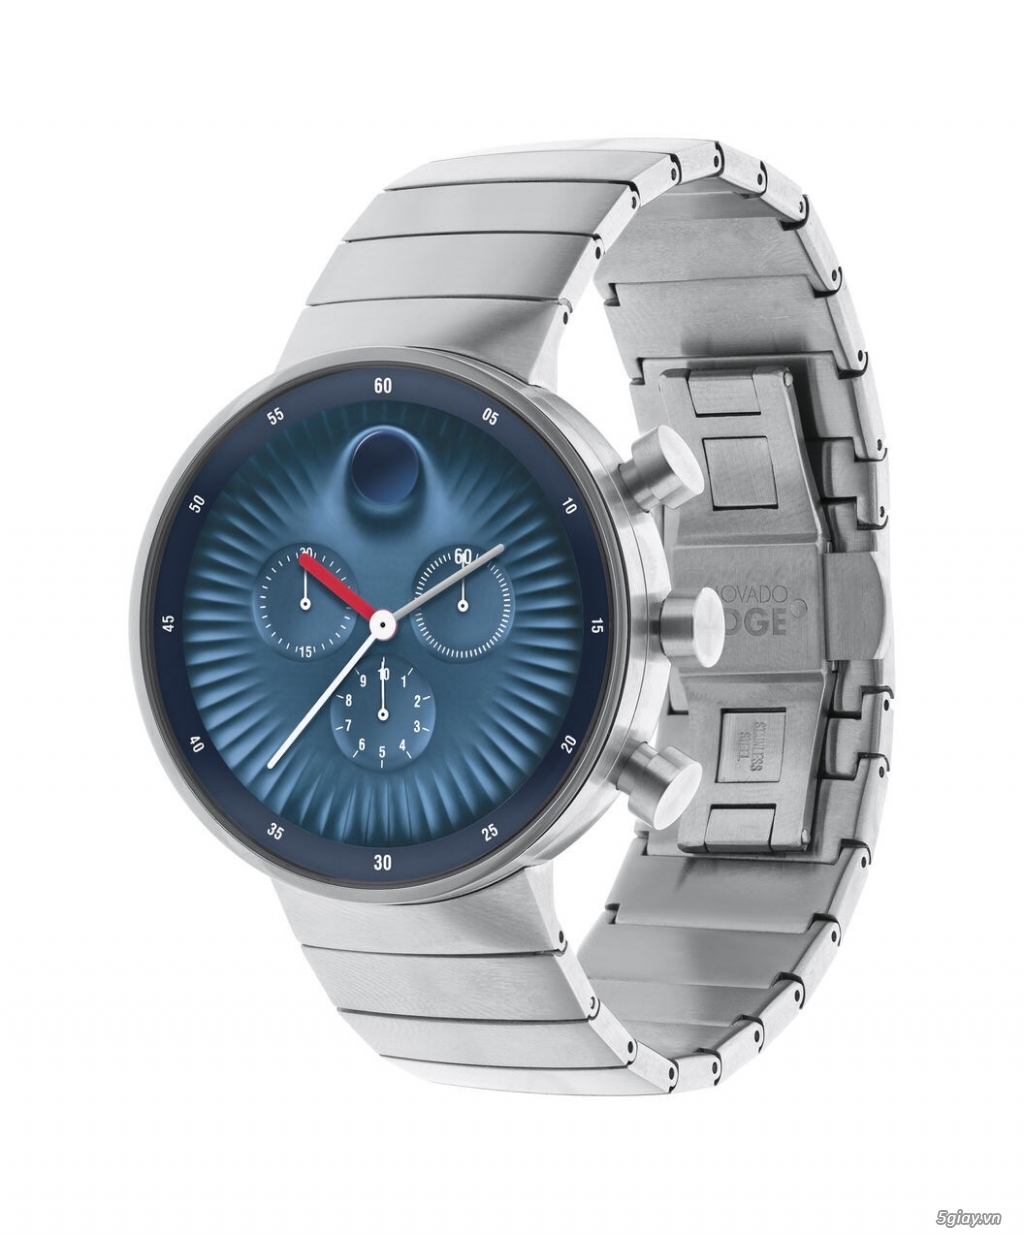 HCM - Cần bán đồng hồ Movado chính hãng mới 100% - 2